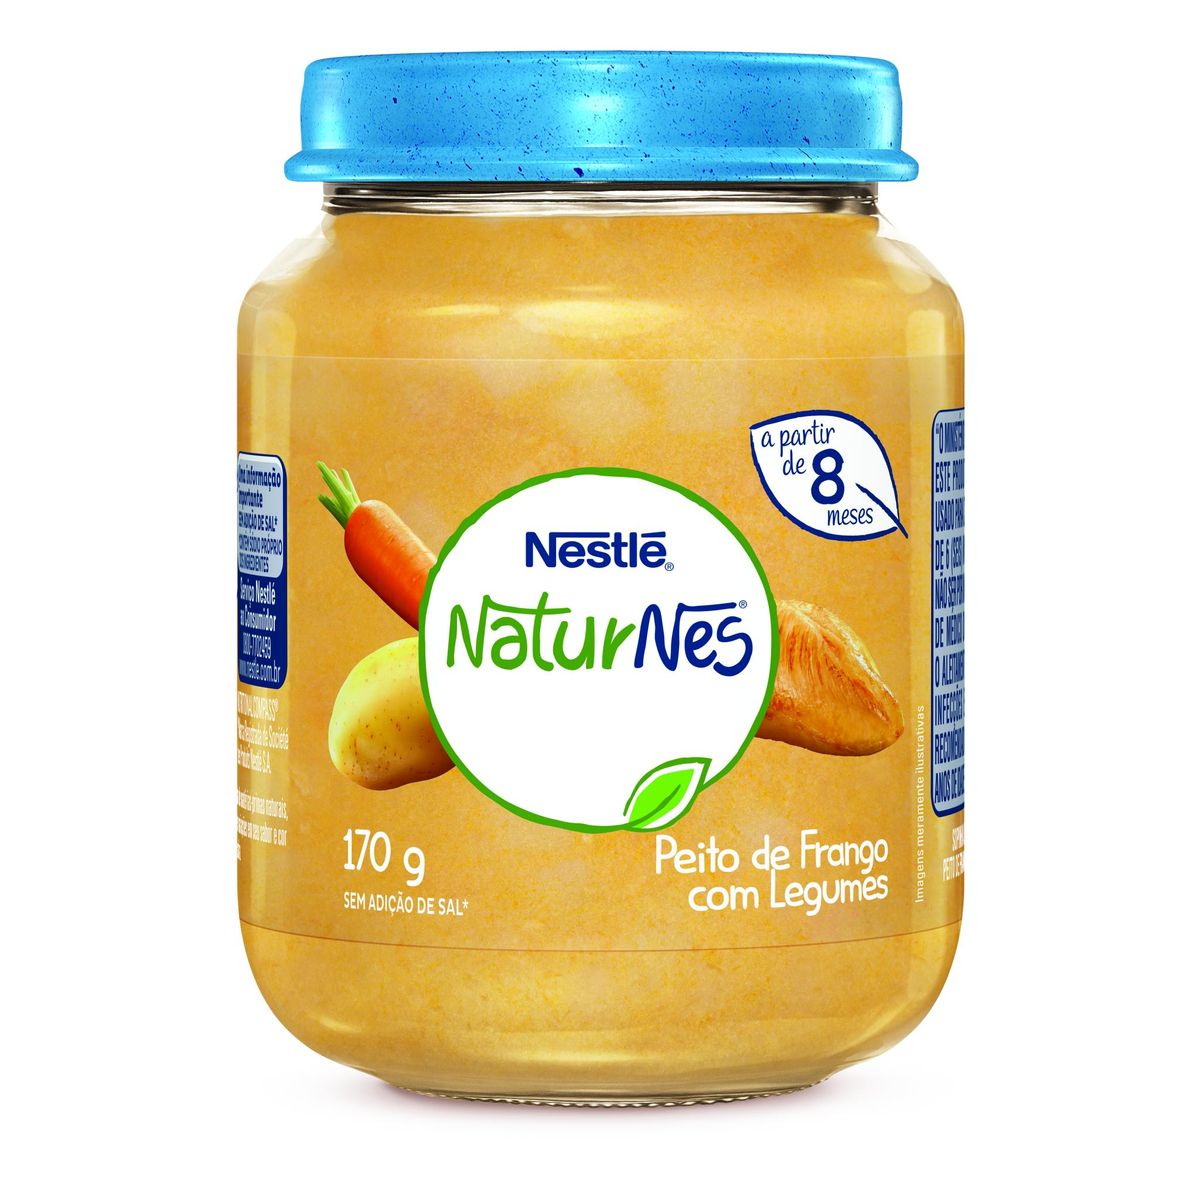 Papinha Nestlé Naturnes Peito de Frango com Legumes 170g image number 0